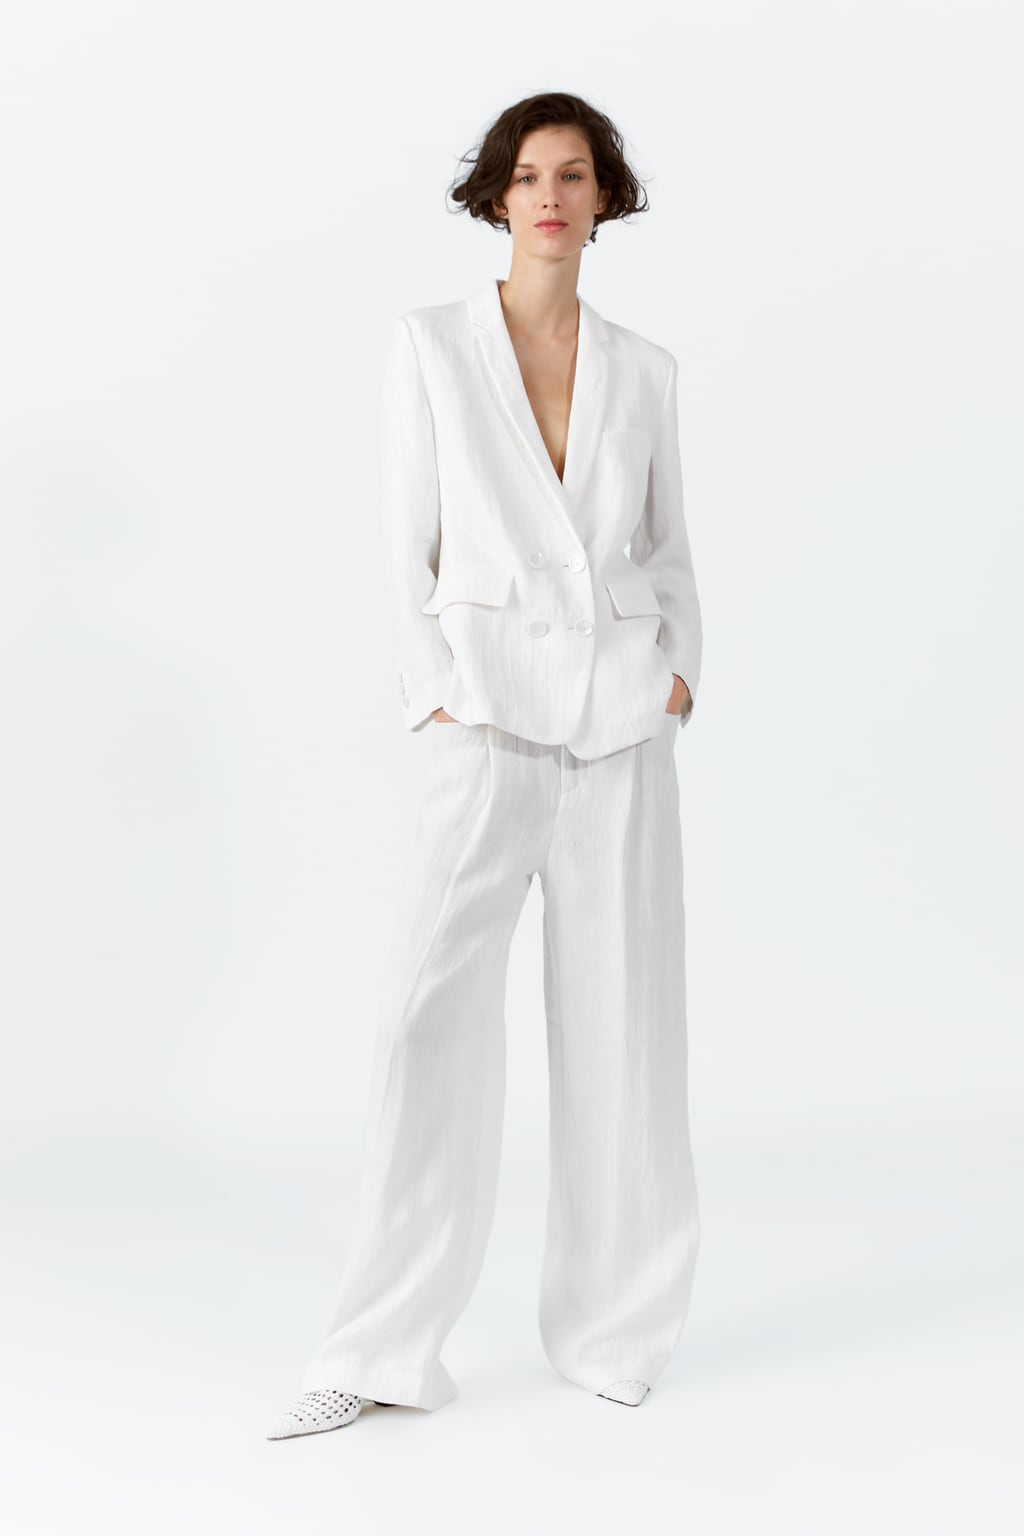 loseta Larry Belmont Construir sobre El color blanco, tendencia protagonista en la colección primavera 2019 Zara  mujer - Modalia.es